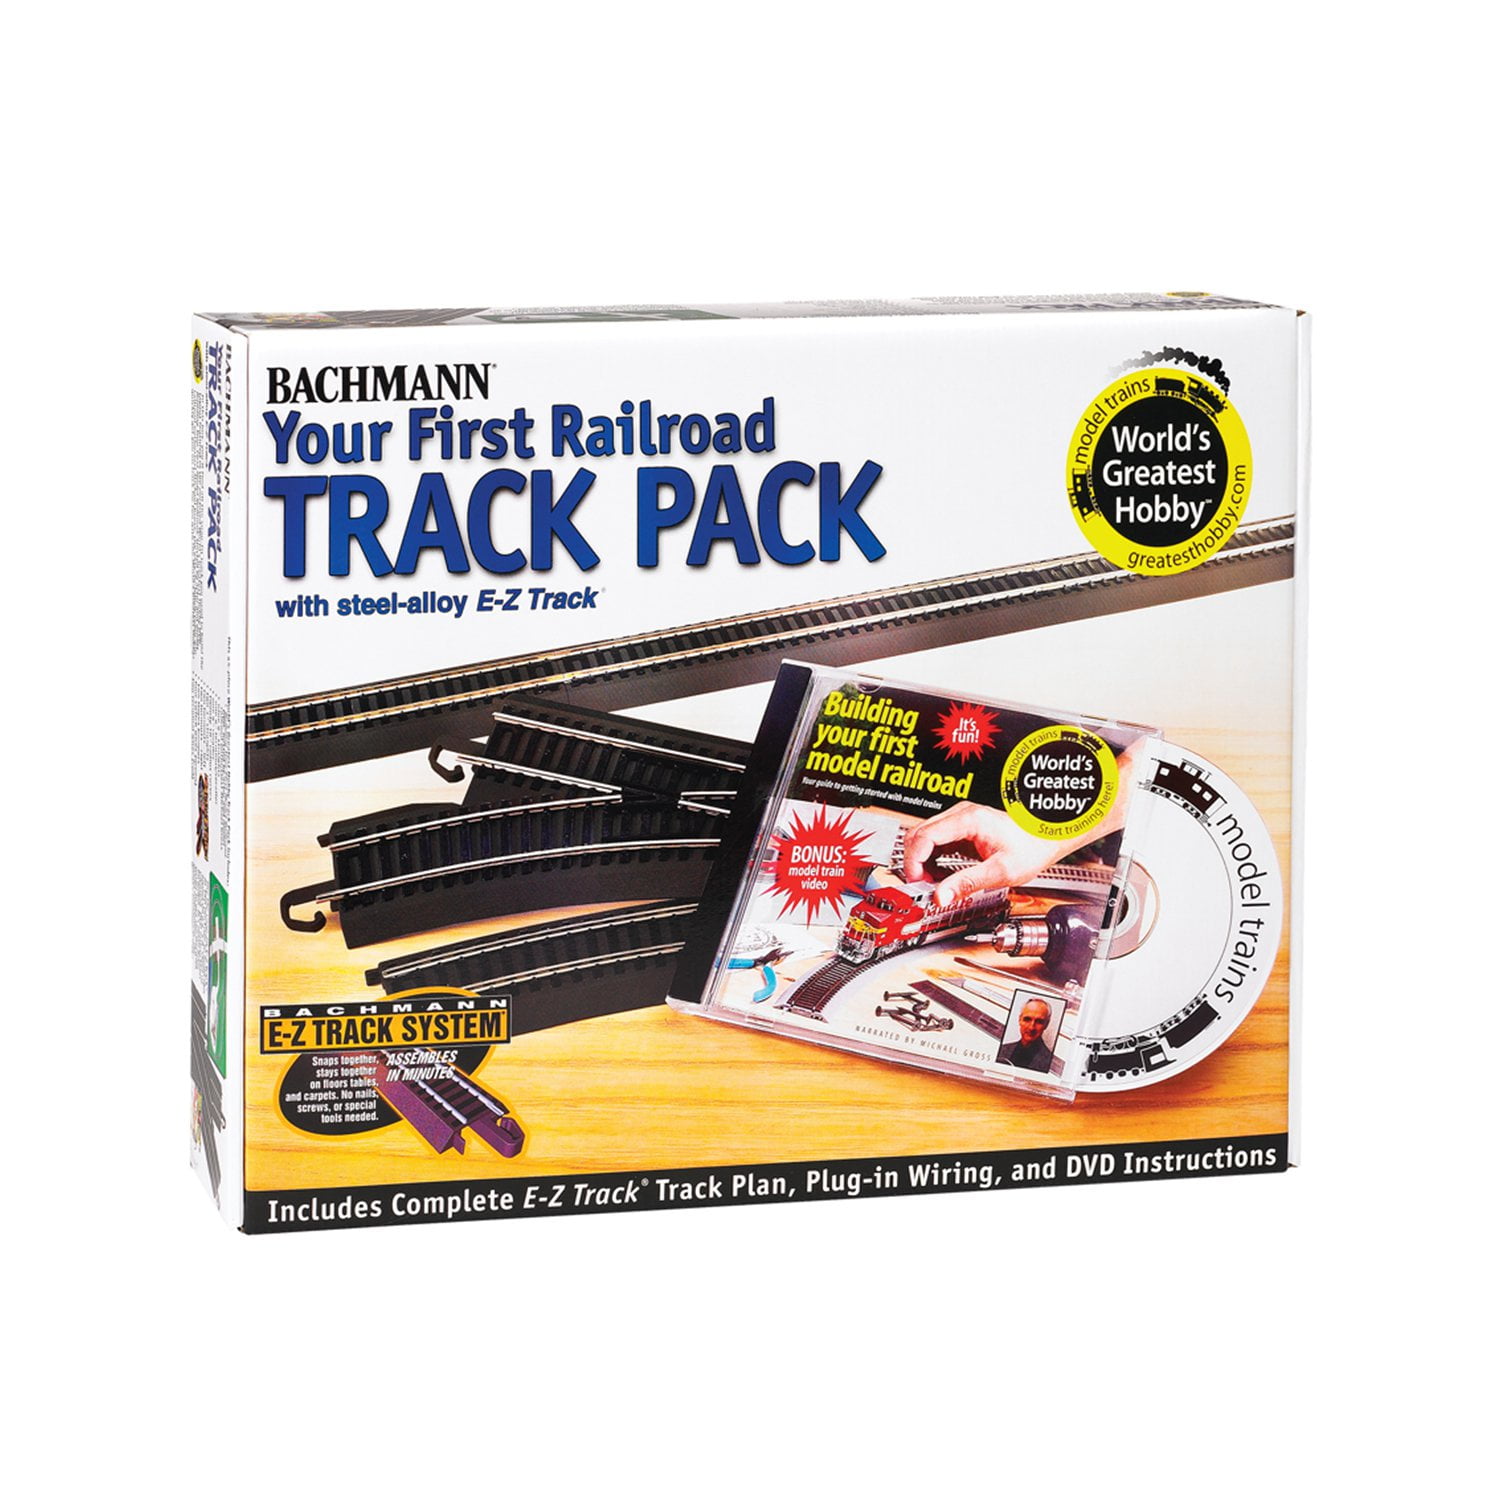 Track pack. Hobby track. Hobby Tracker.